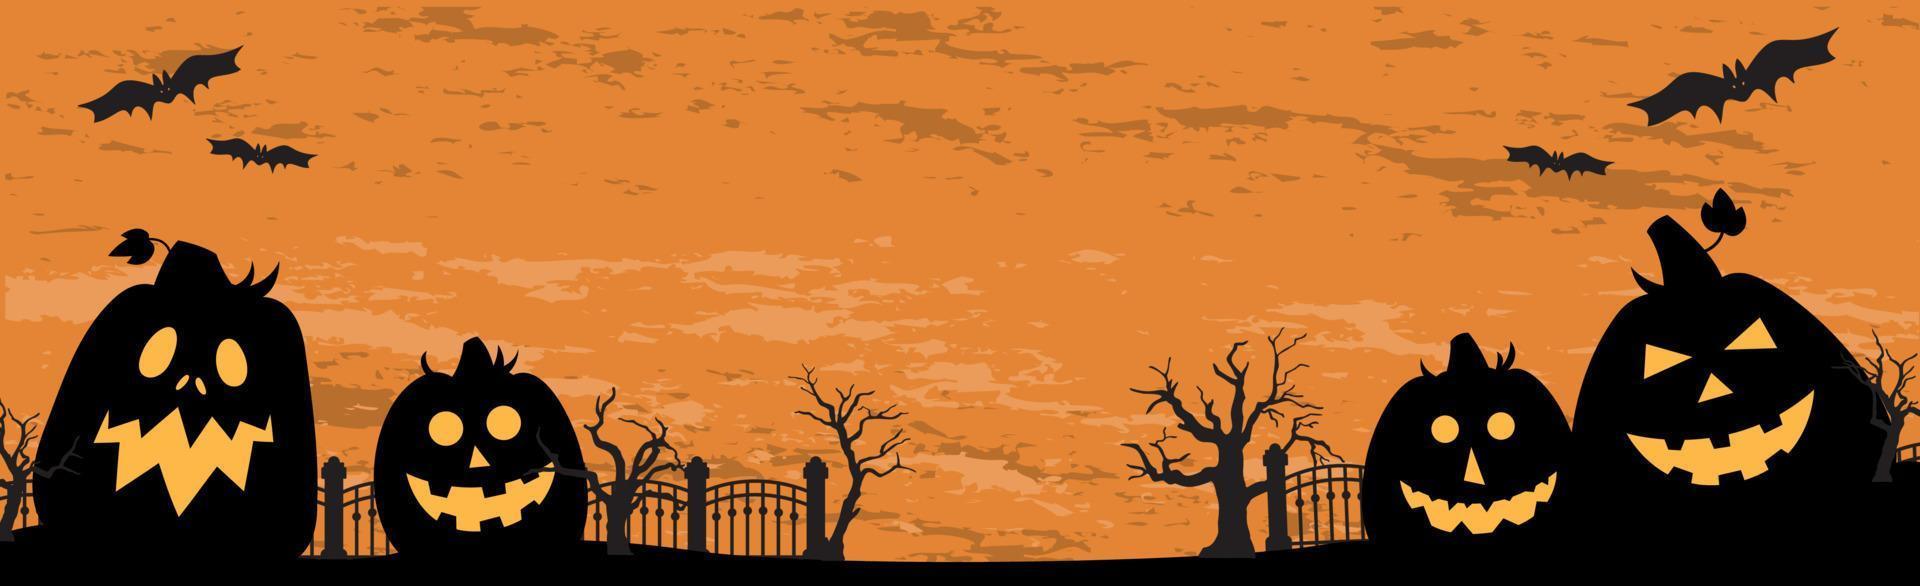 beängstigend düster orange Halloween Hintergrund - Vektor